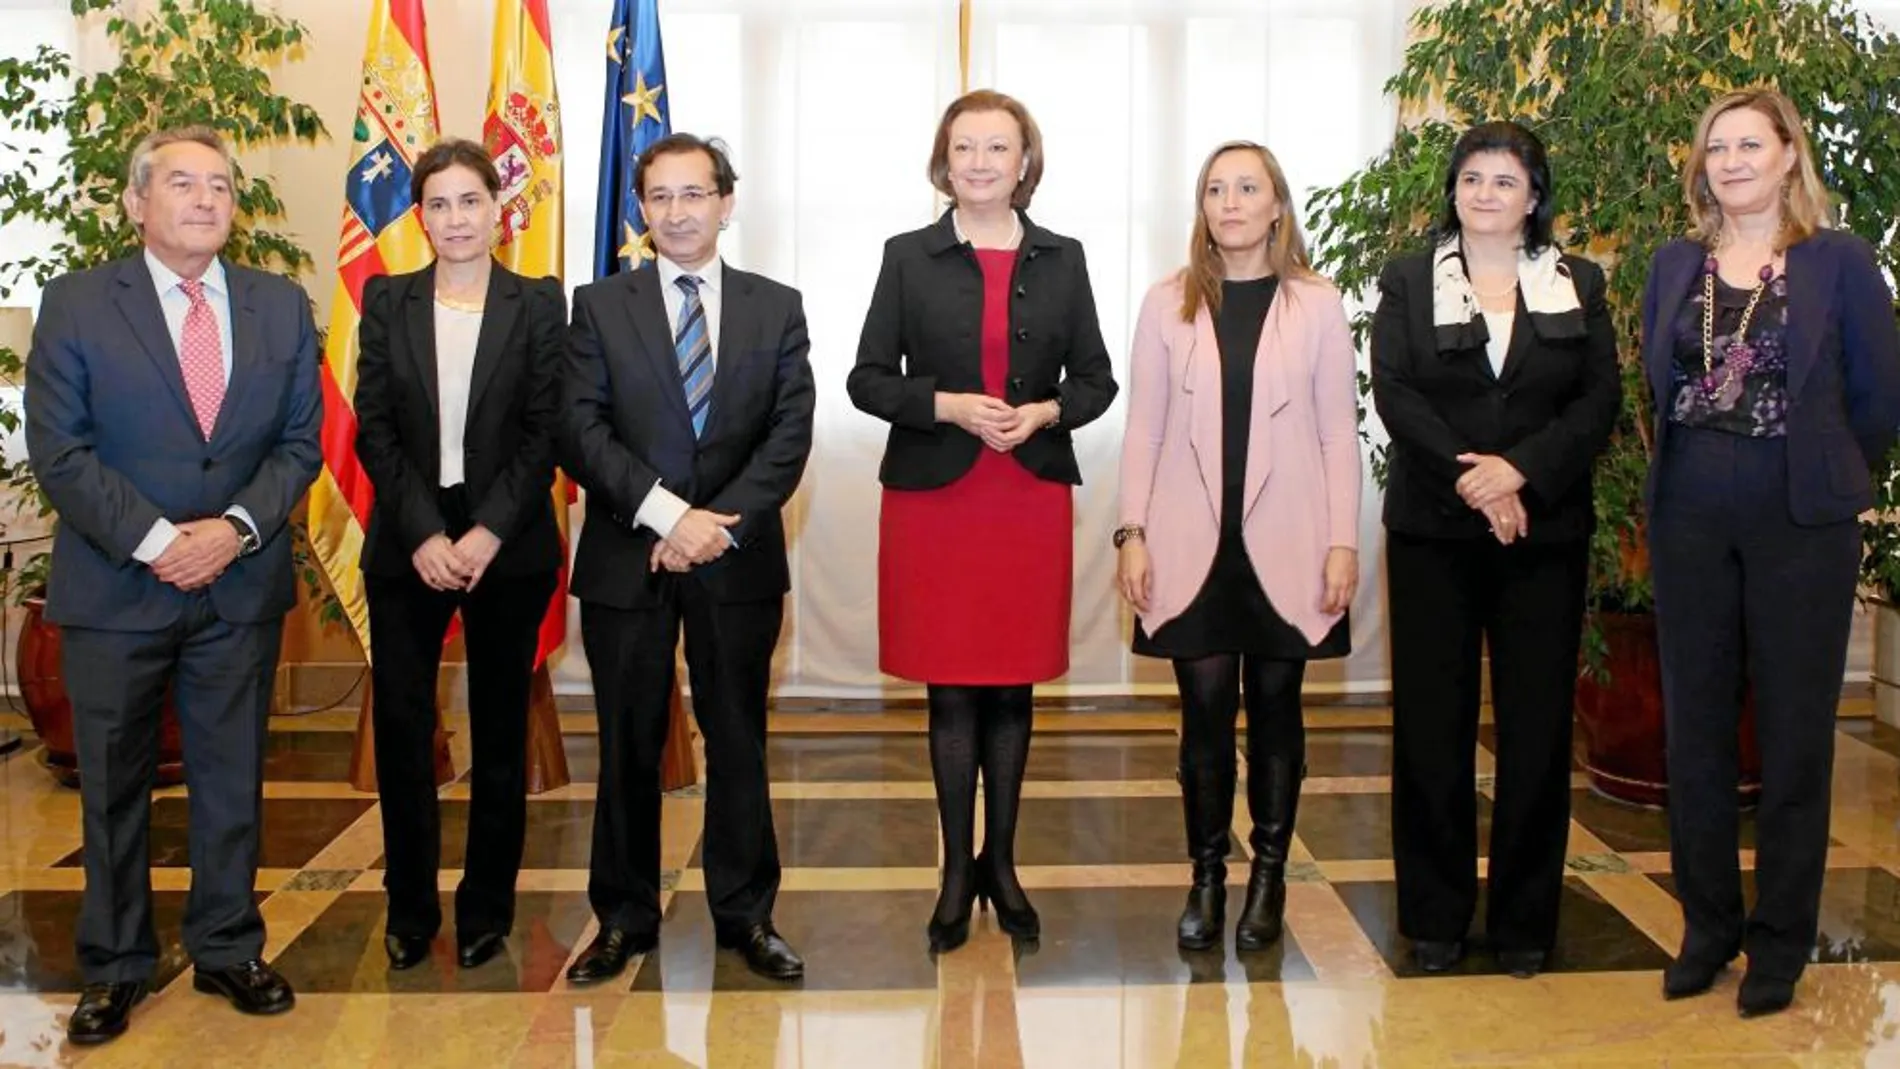 La consejera de Hacienda, Pilar del Olmo, junto con otros representantes en materia de Hacienda del resto de las autonomías reunidos en Zaragoza